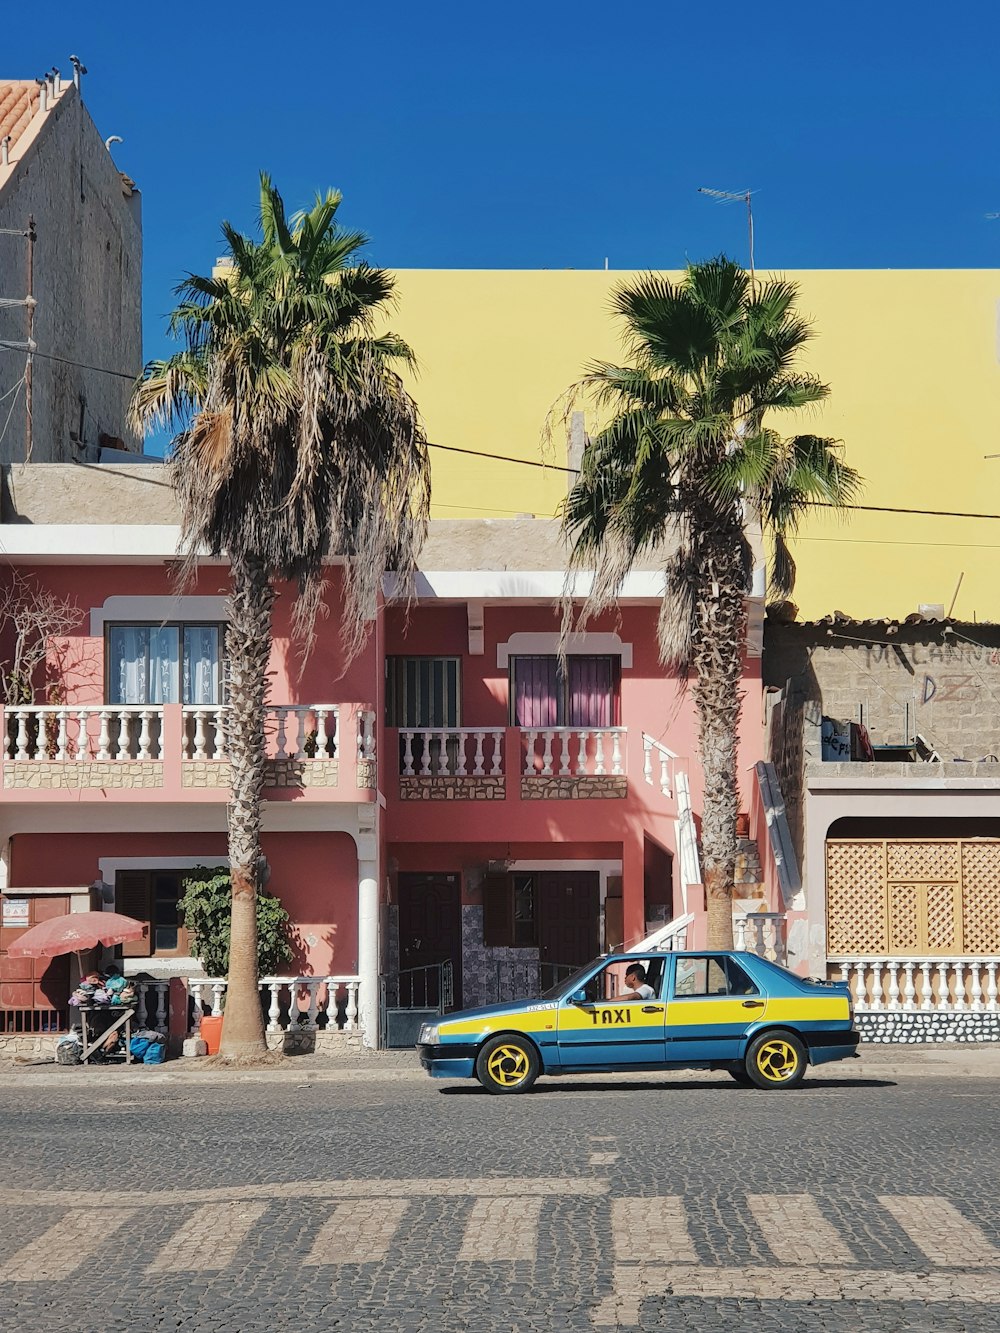 Taxi bleu et jaune garé près d’un palmier